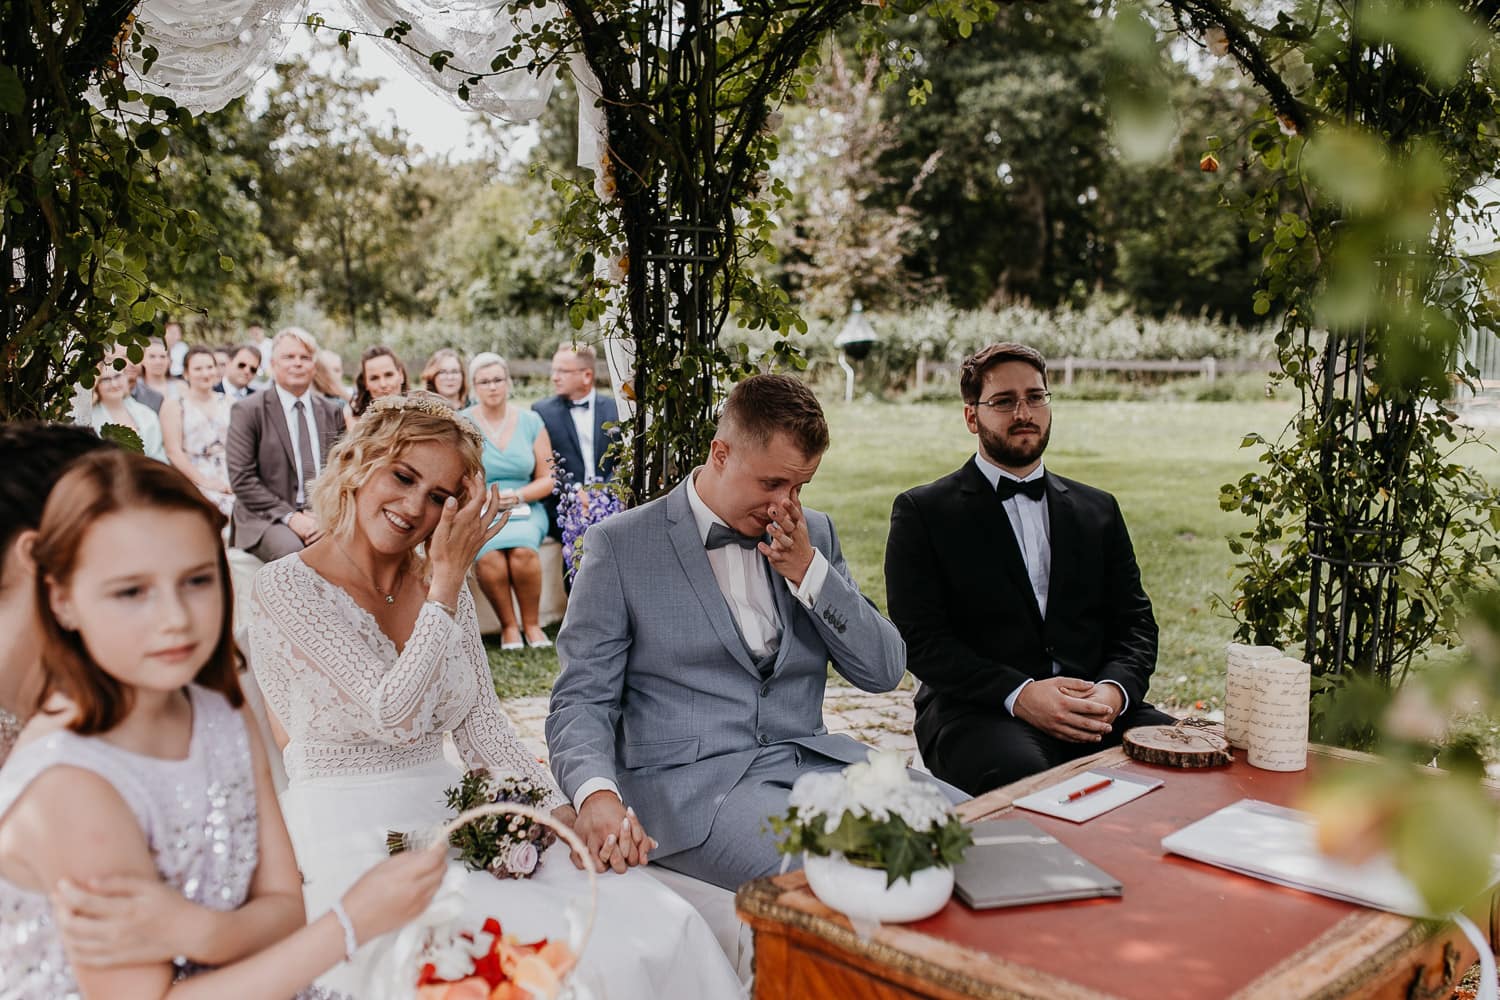 ceremony, wedding, freie trauung, braut, bride, groom, bräutigam, weint